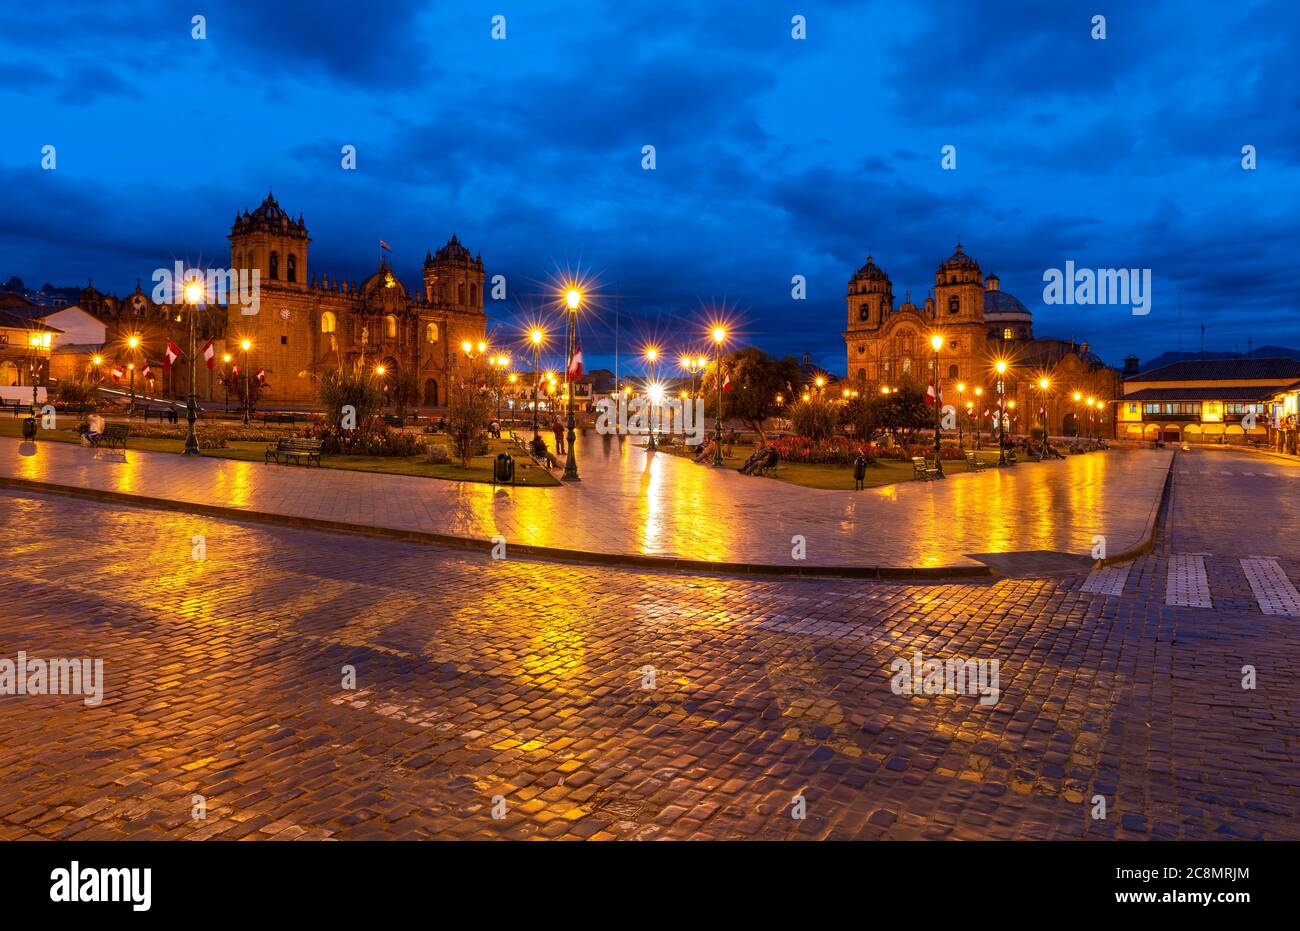 La piazza principale di Plaza de Armas della capitale inca Cusco durante l'ora blu con la Cattedrale e la chiesa Compania de Jesus, Perù. Foto Stock